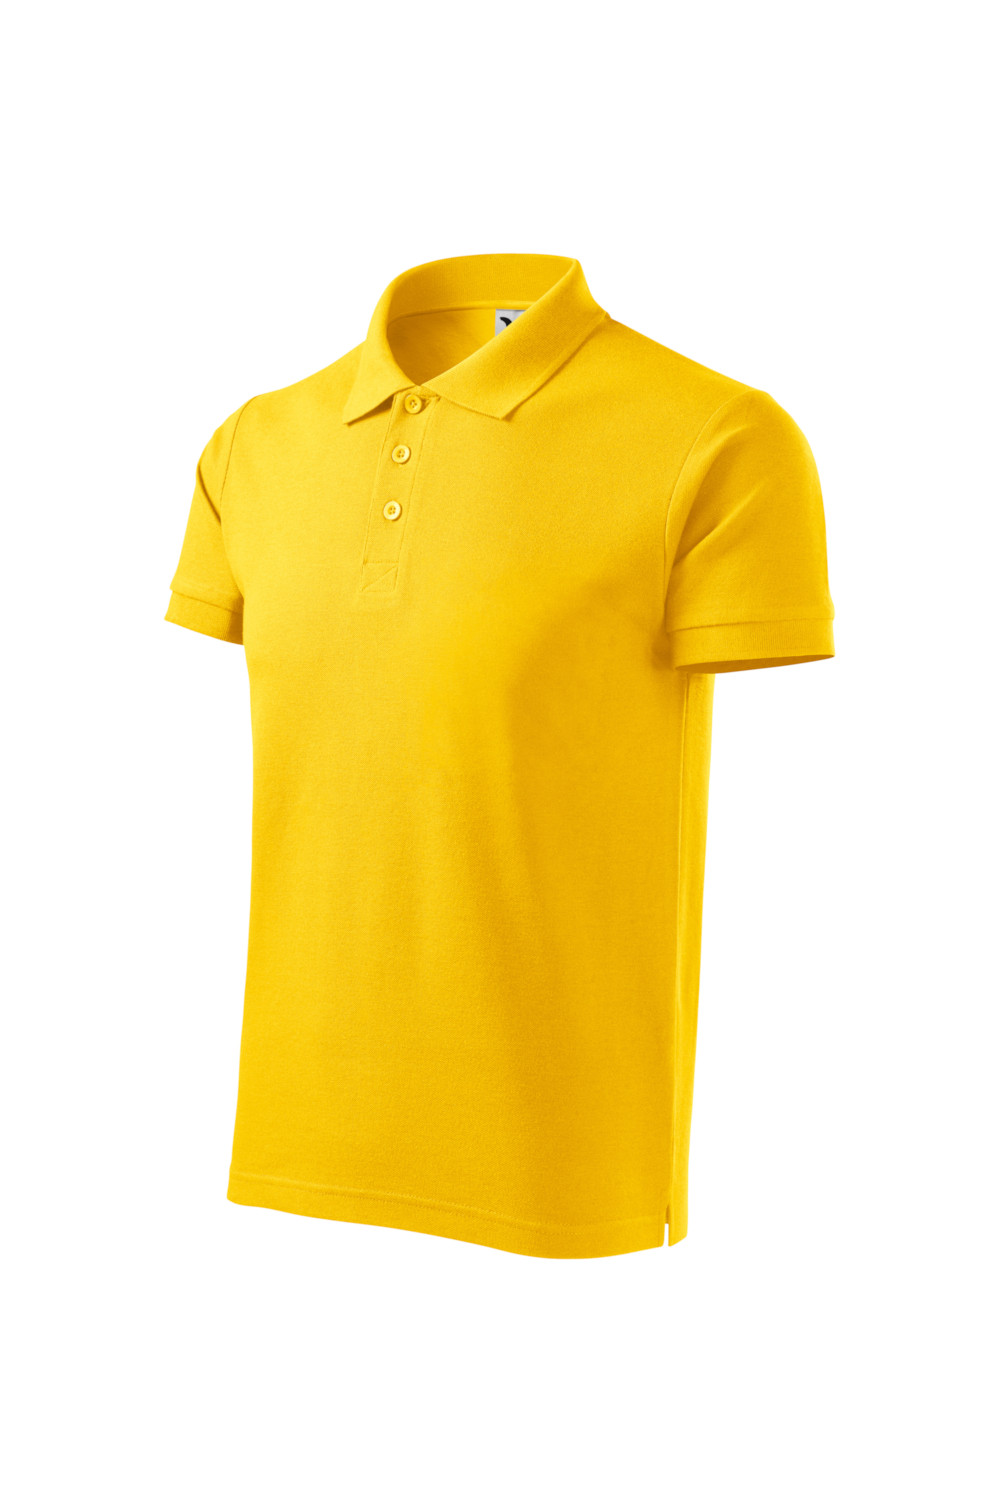 COTTON HEAVY 215 MALFINI ADLER Koszulka Polo męska 100% bawełna żółty